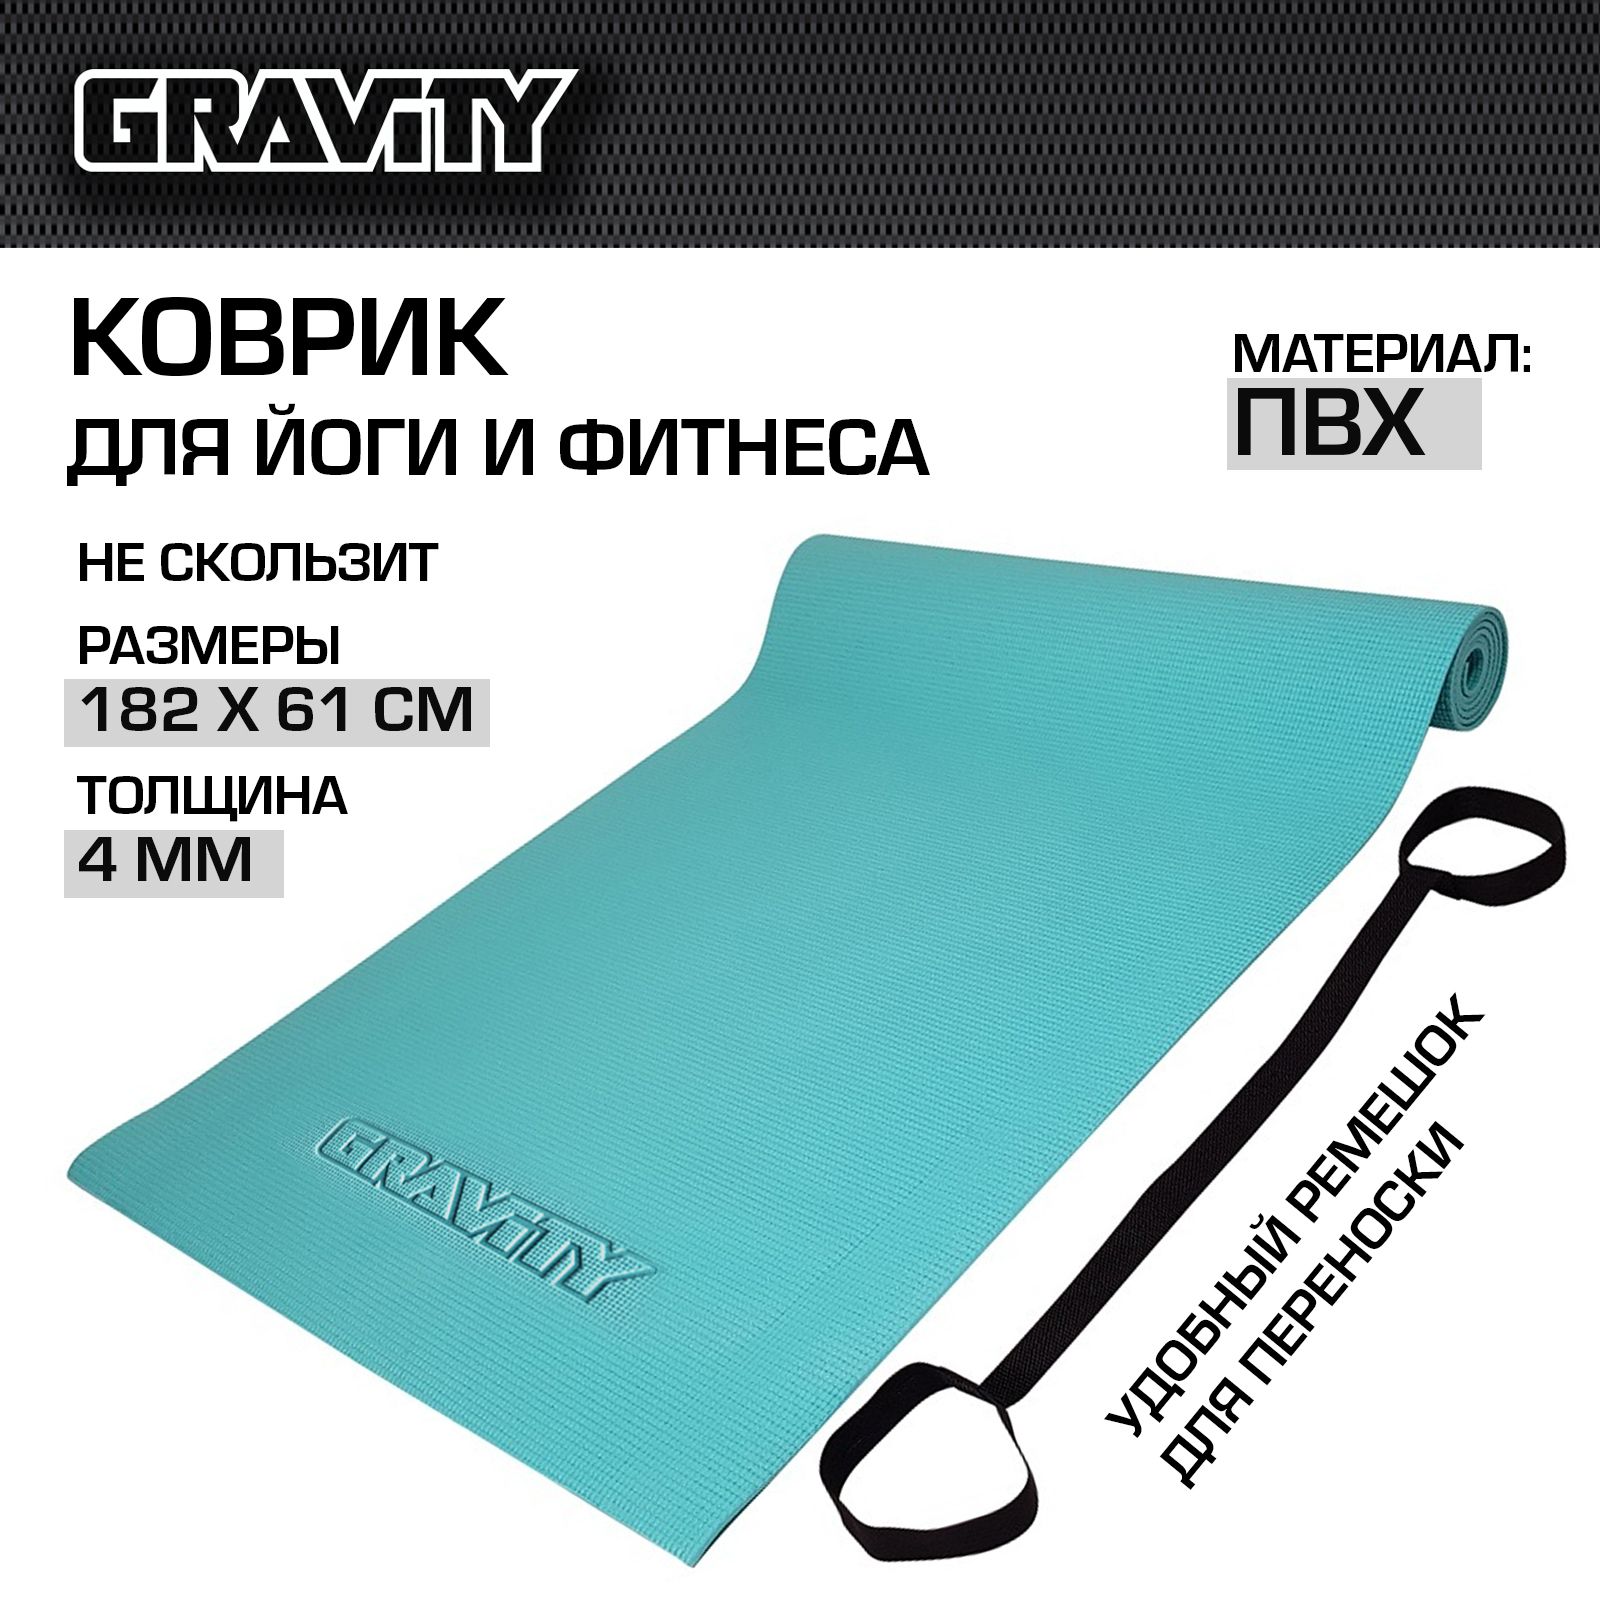 Коврик для йоги Gravity DK2203, 4 мм, с эластичным шнуром, бирюзовый